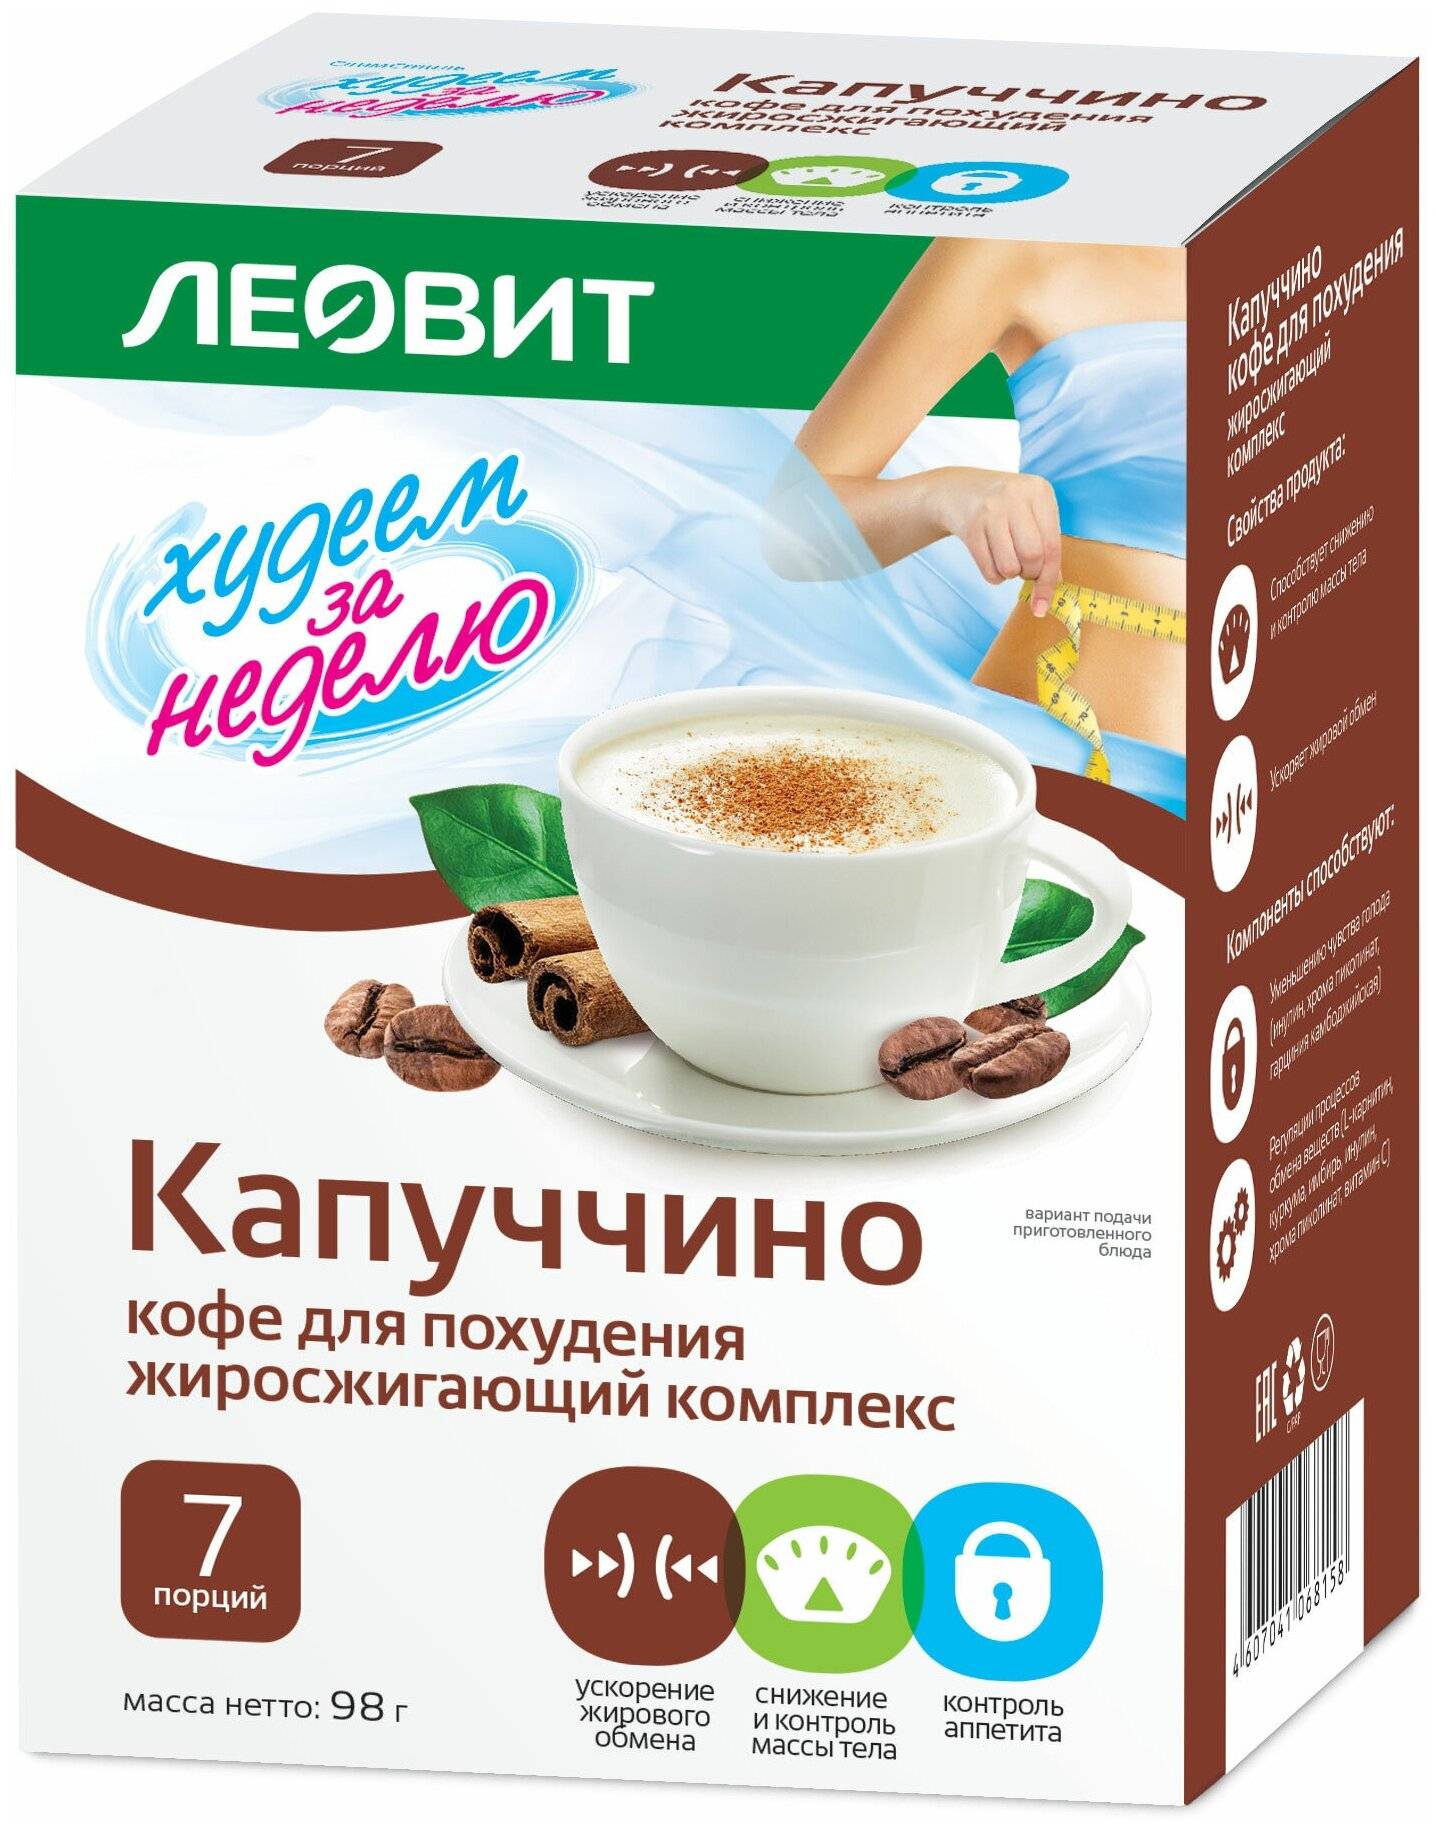 Кофе леовит отзывы - препараты для похудения - первый независимый сайт отзывов россии